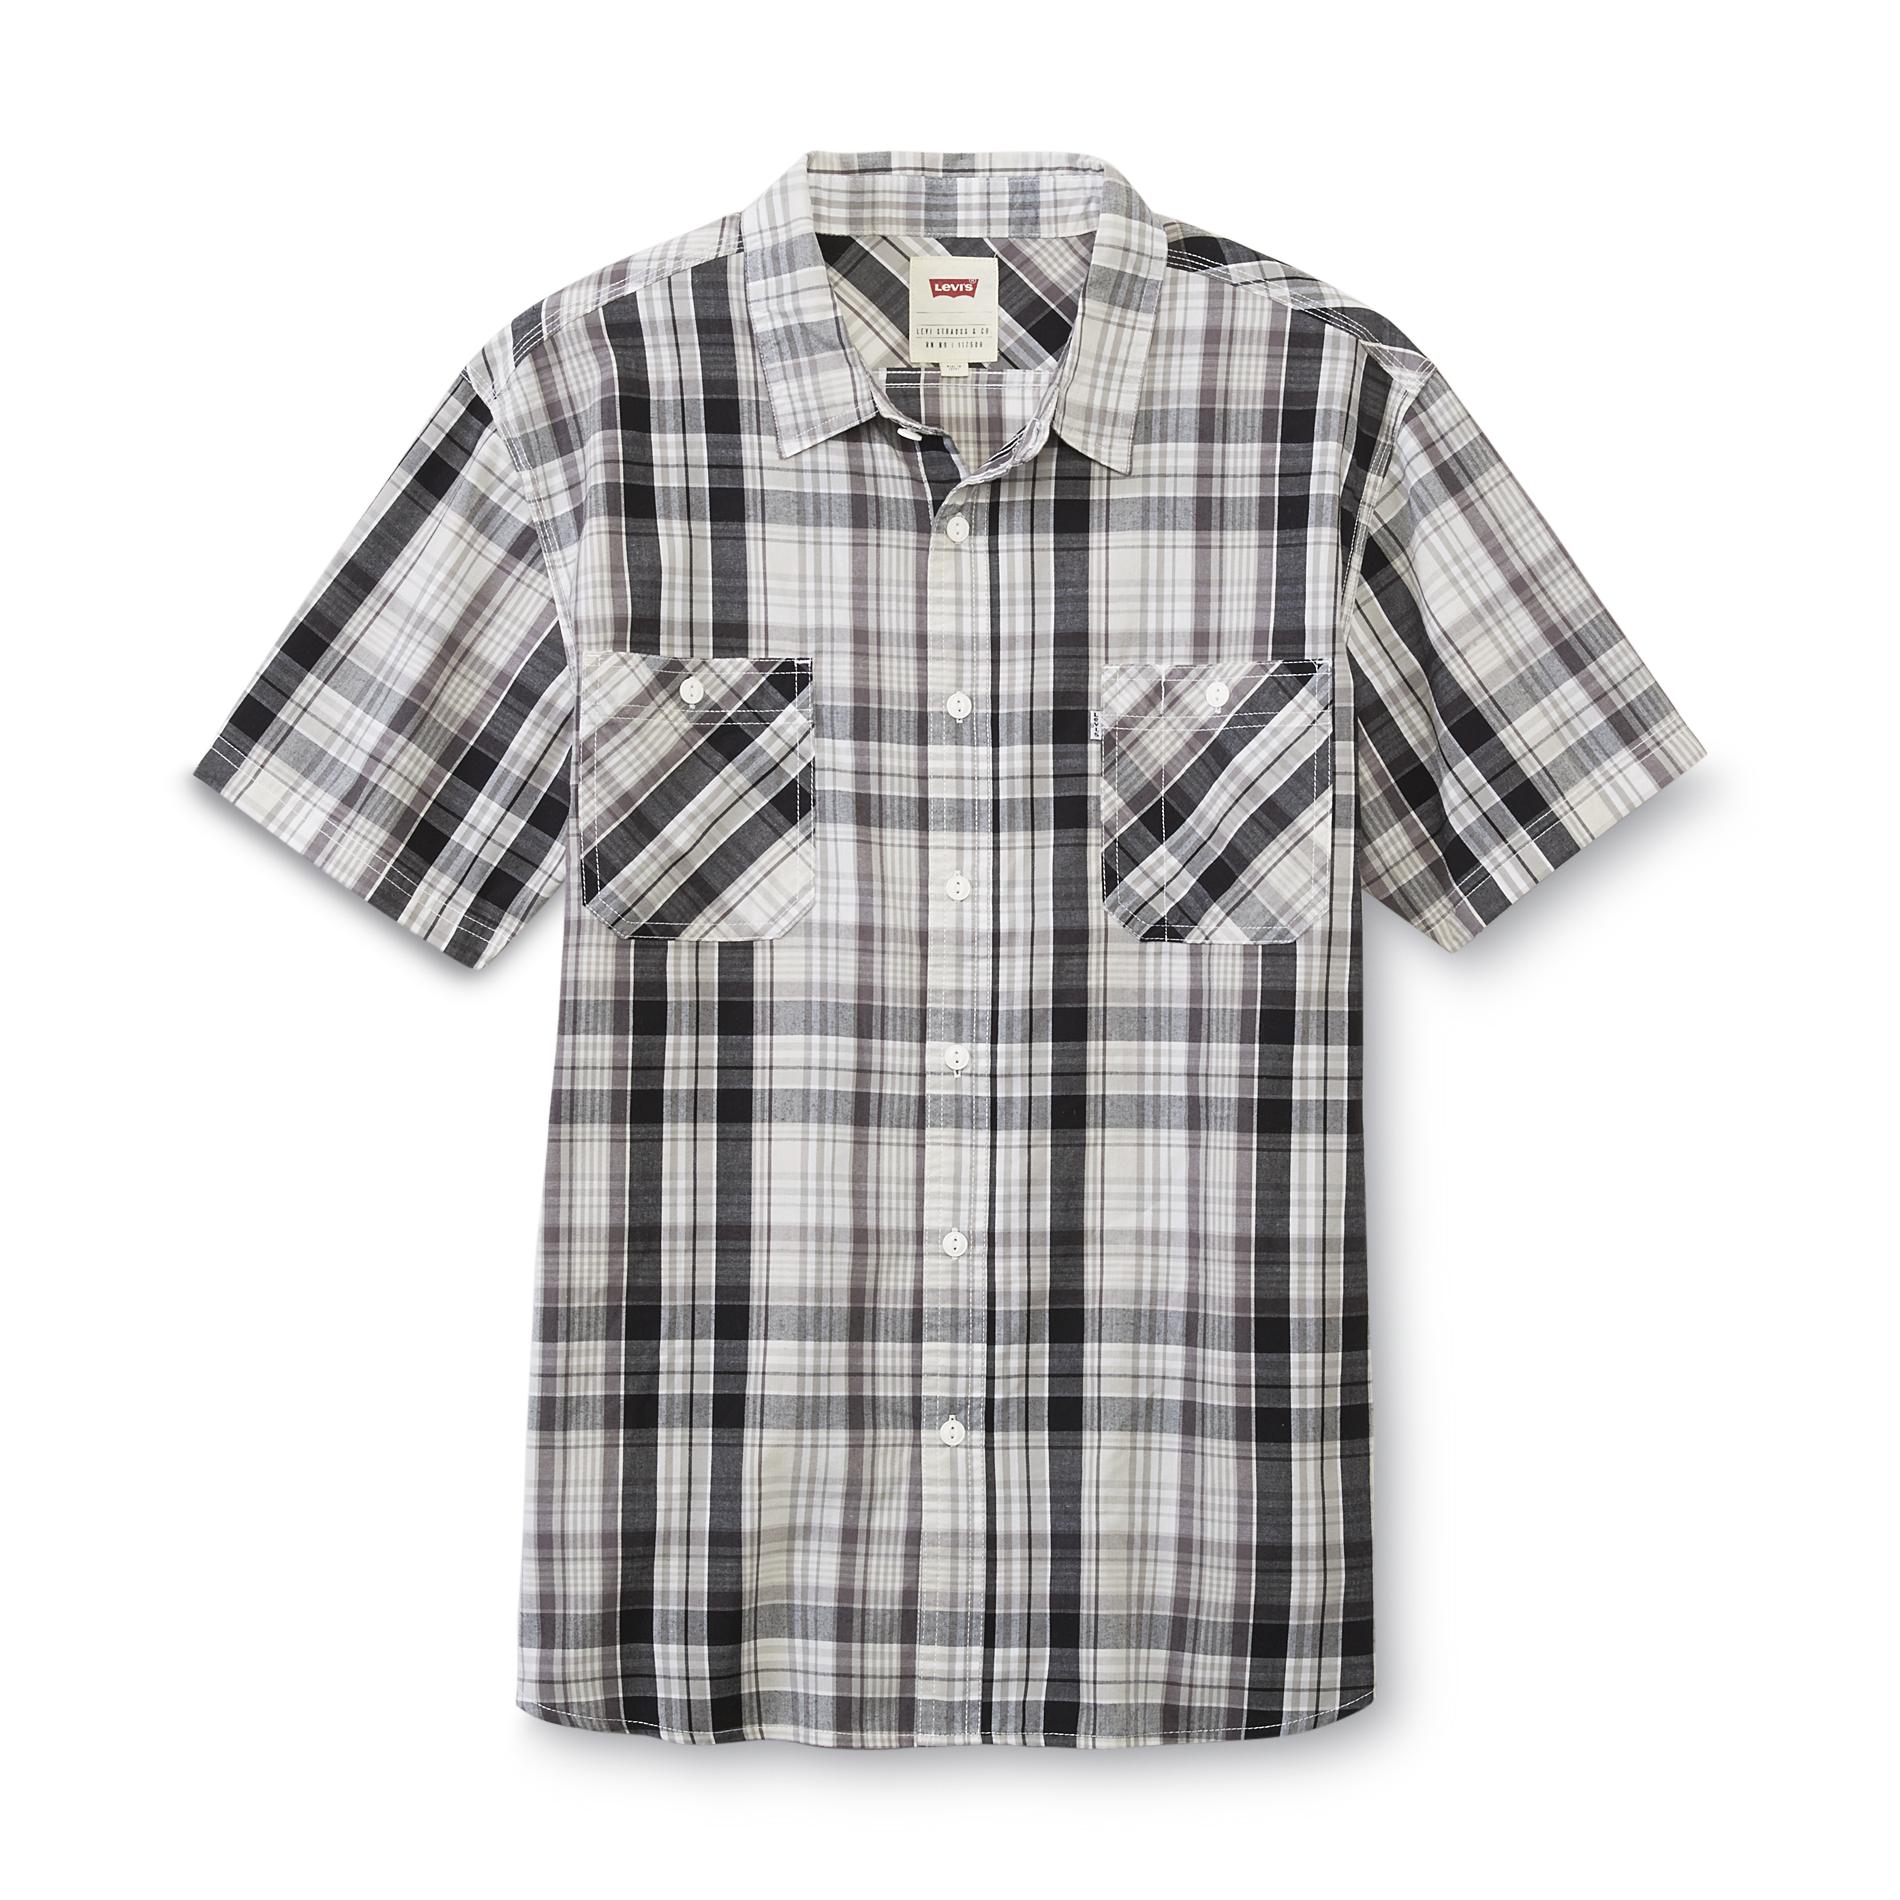 Levi's Men's Button-Front Shirt - Plaid